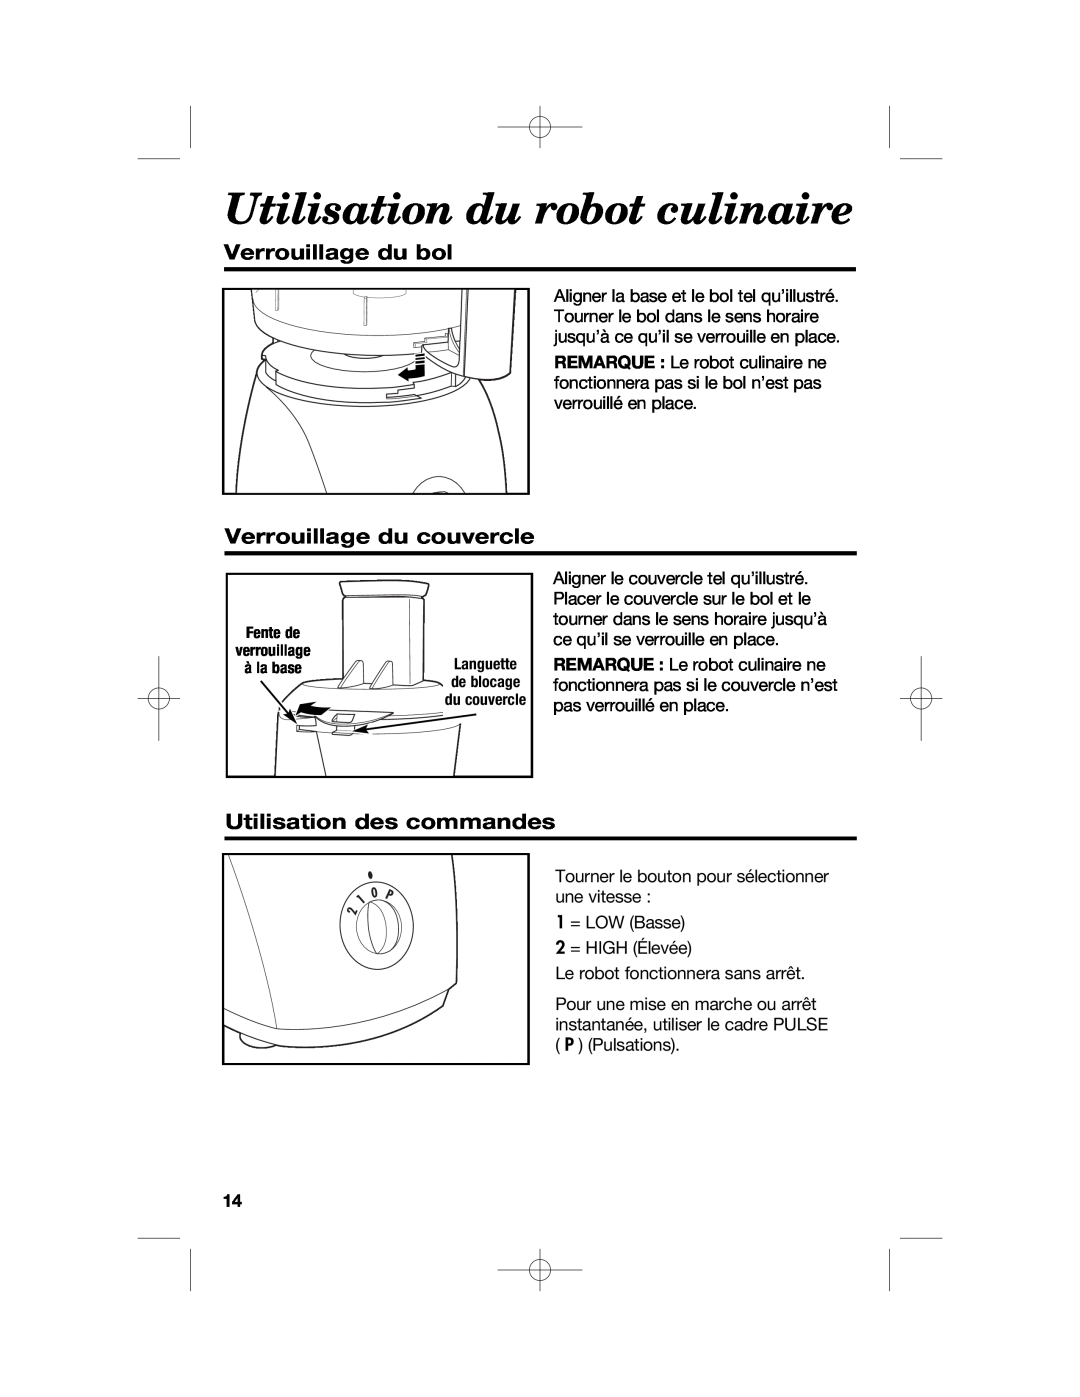 Hamilton Beach 70610, 70670 manual Utilisation du robot culinaire, Verrouillage du bol, Verrouillage du couvercle 